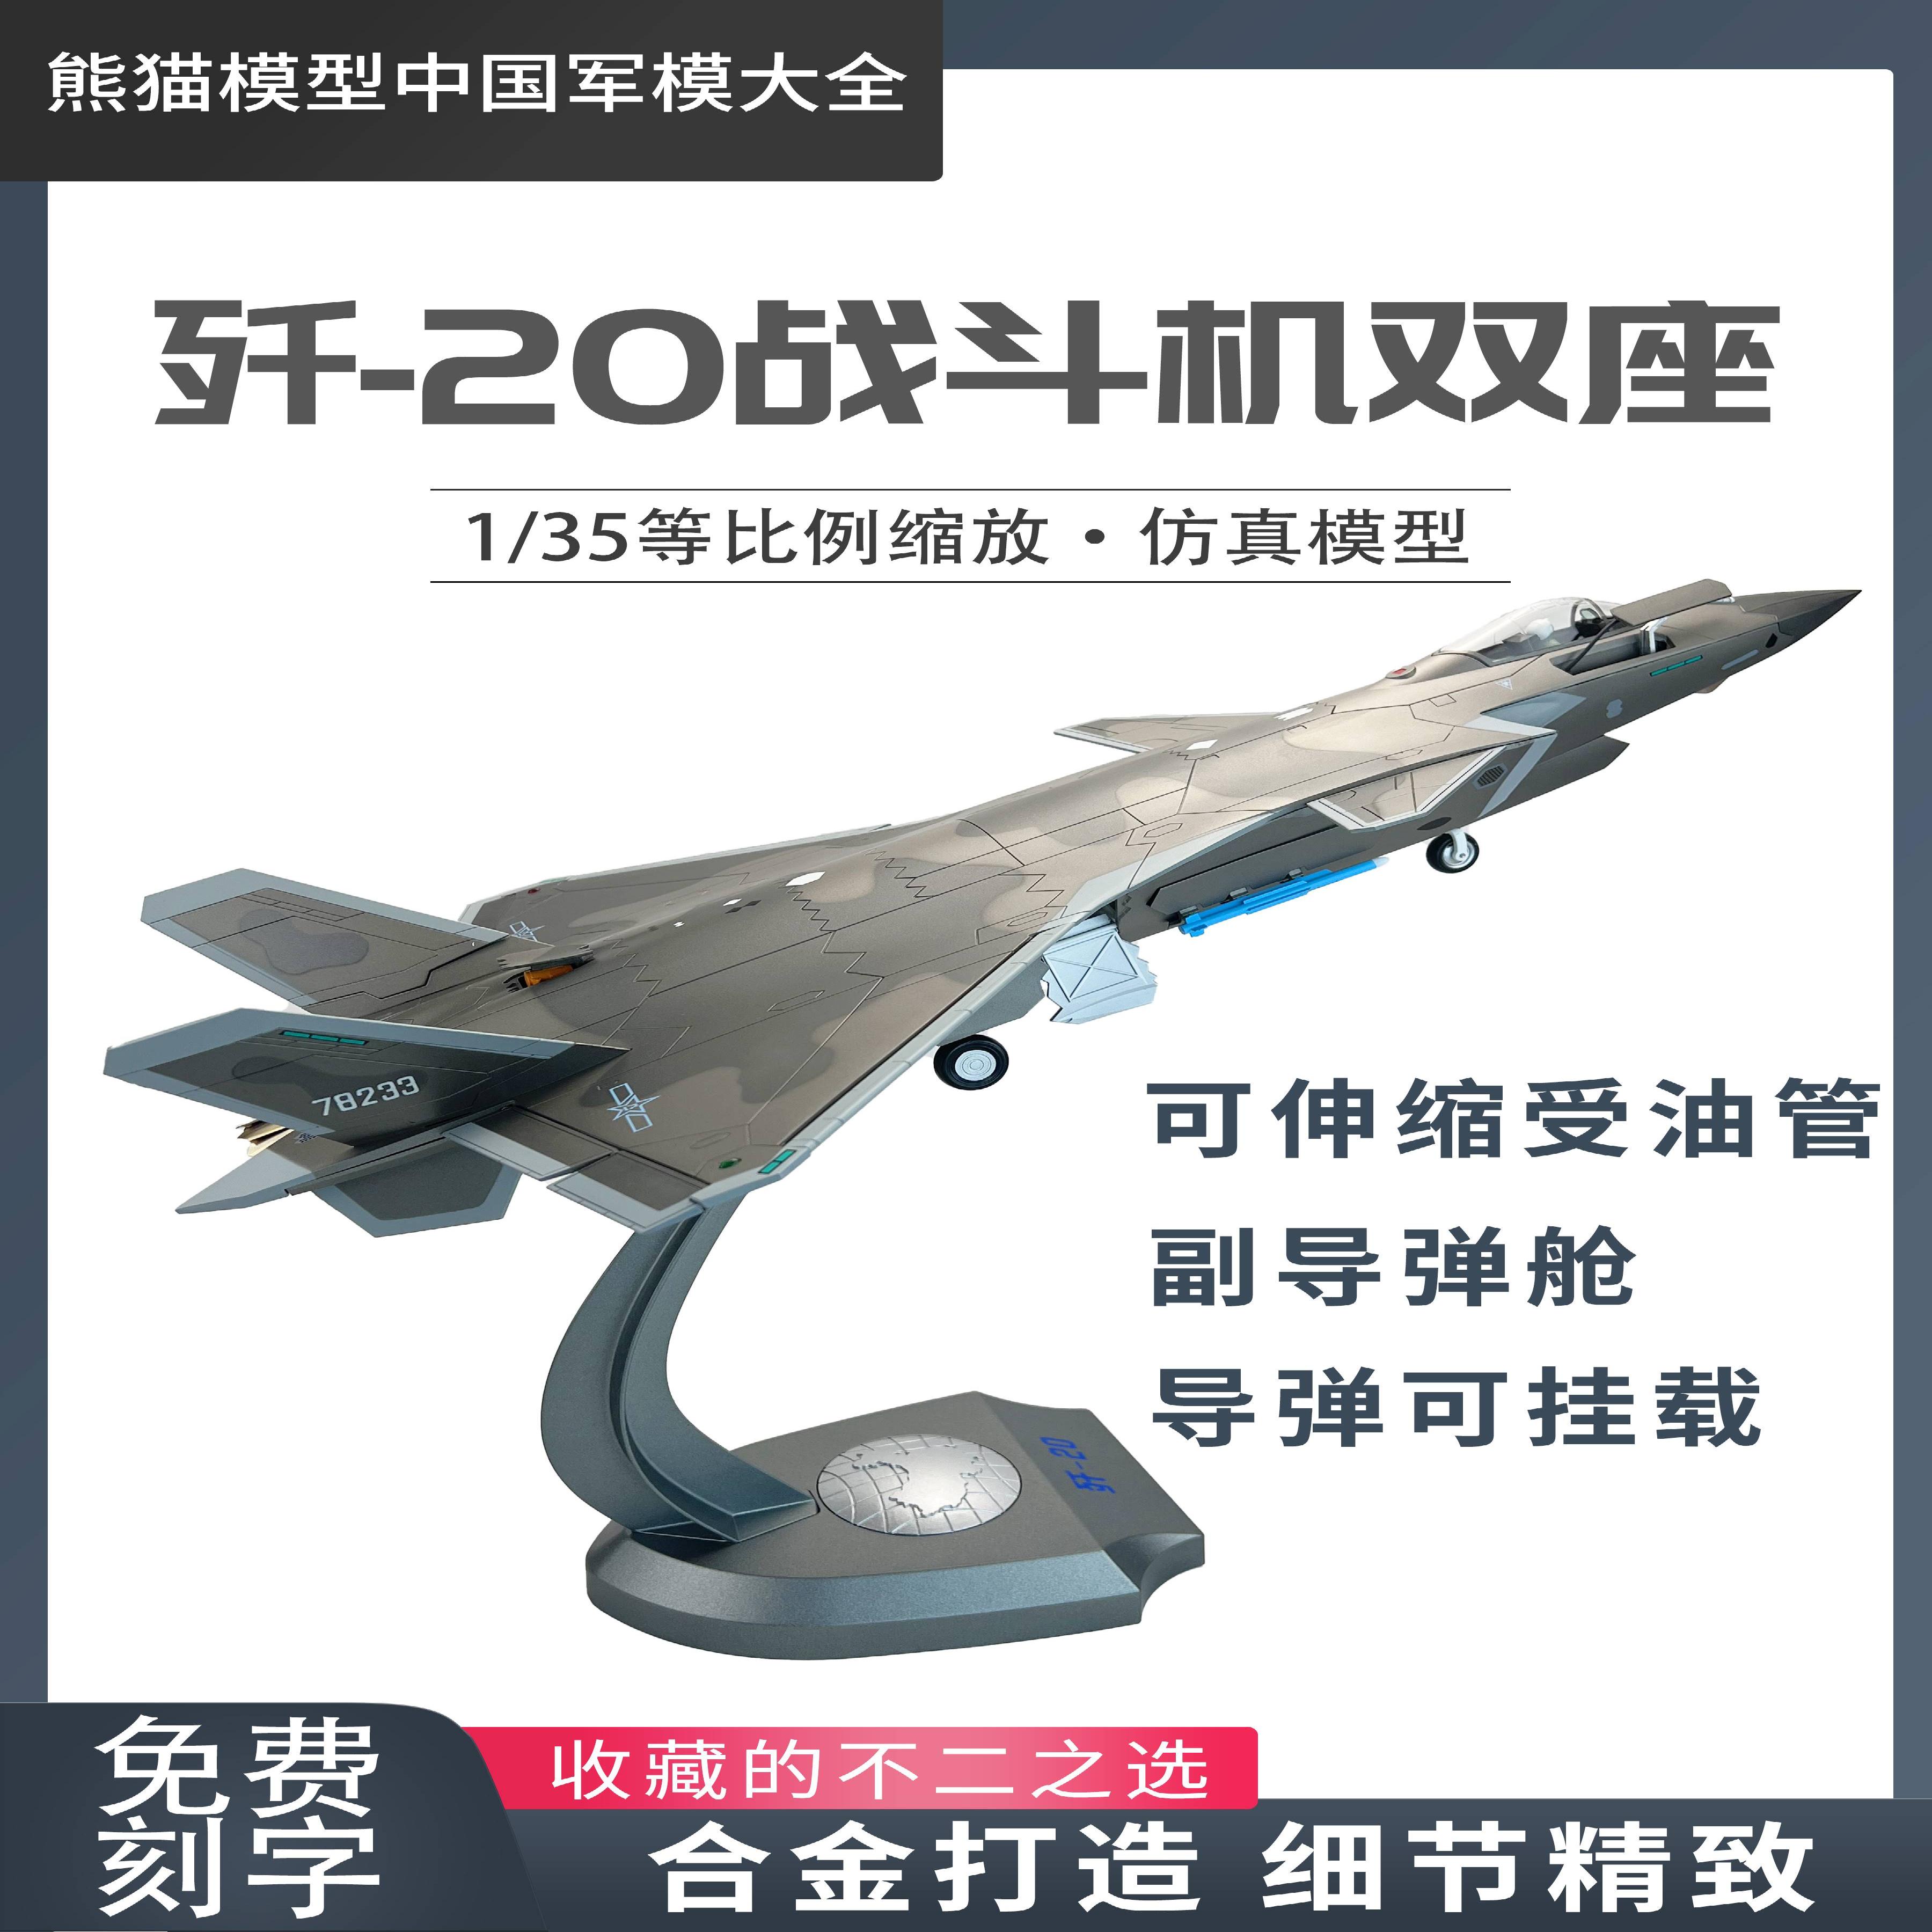 /1:35 歼20隐形战斗机J20B单座双座版合金仿真模型纪念品收藏送礼